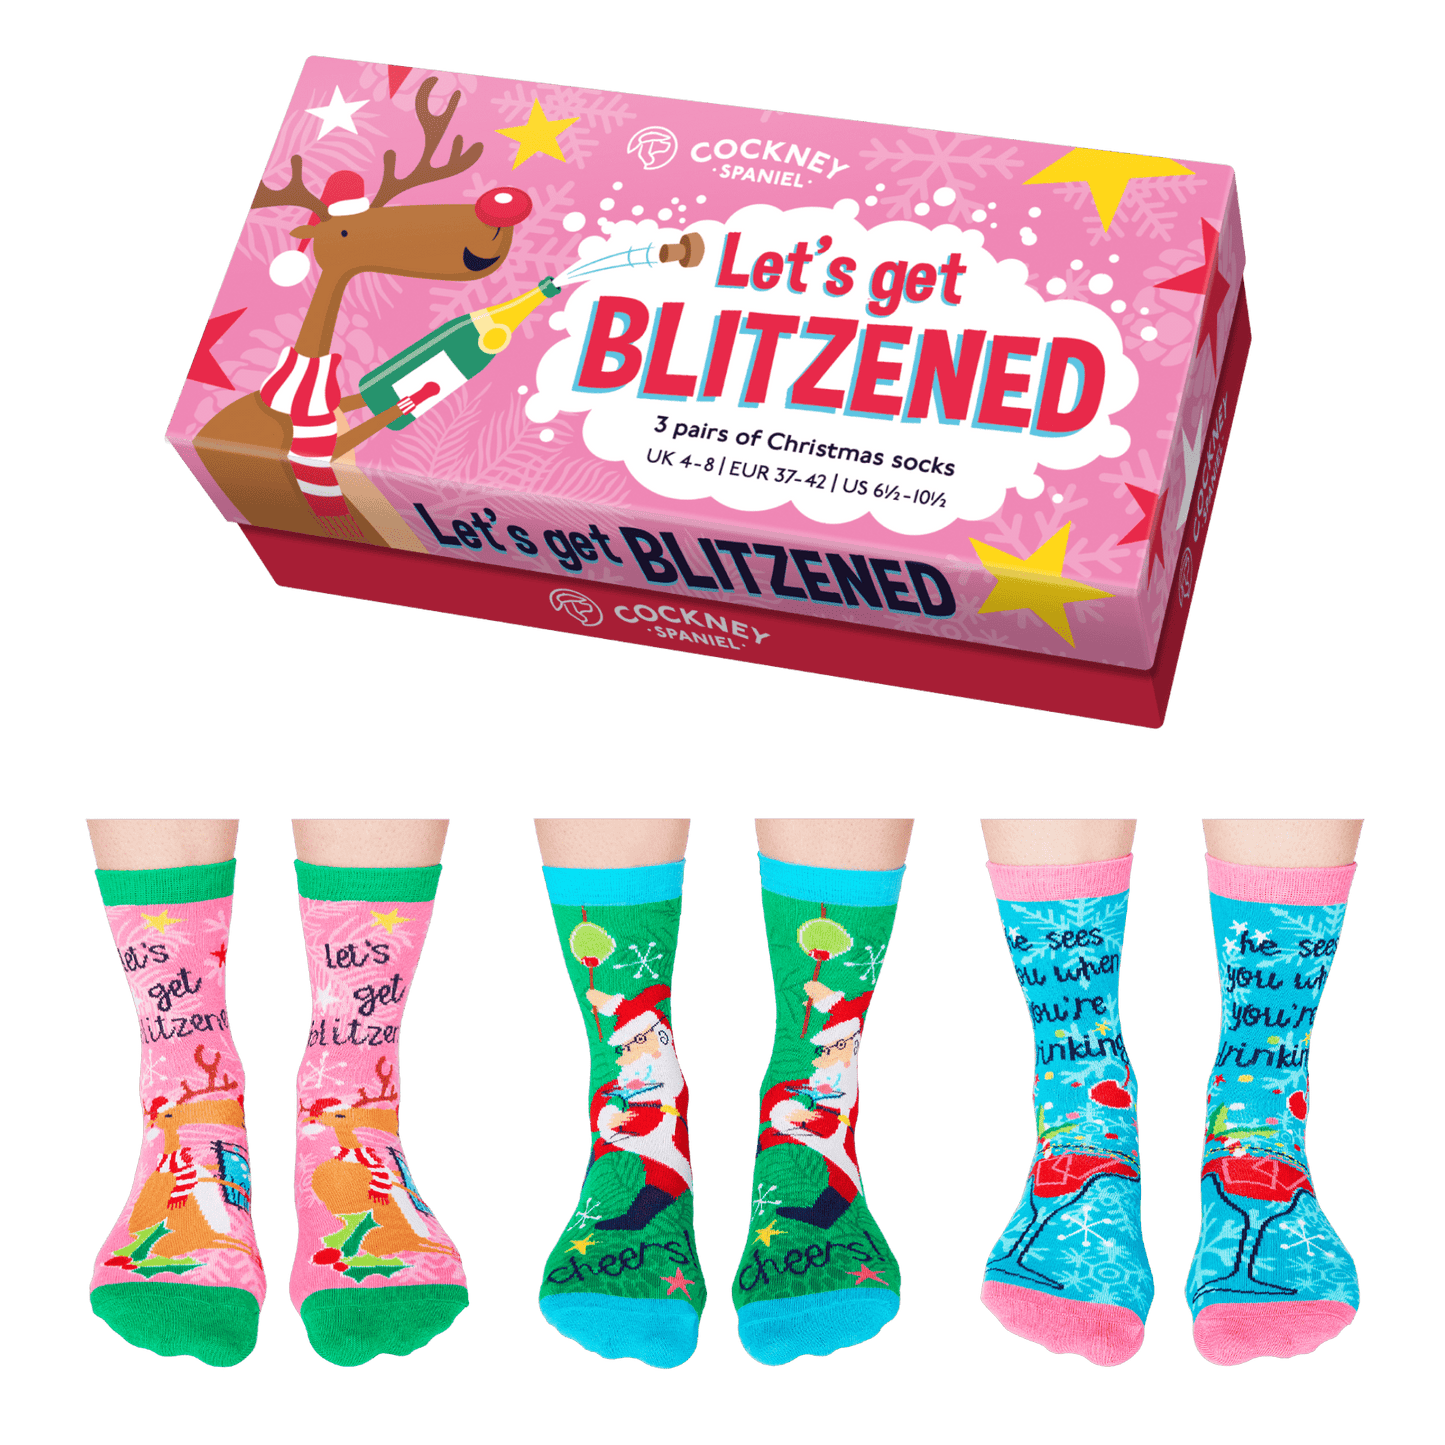 Cockney Spaniel - LET’S GET BLITZENED  Christmas Socks